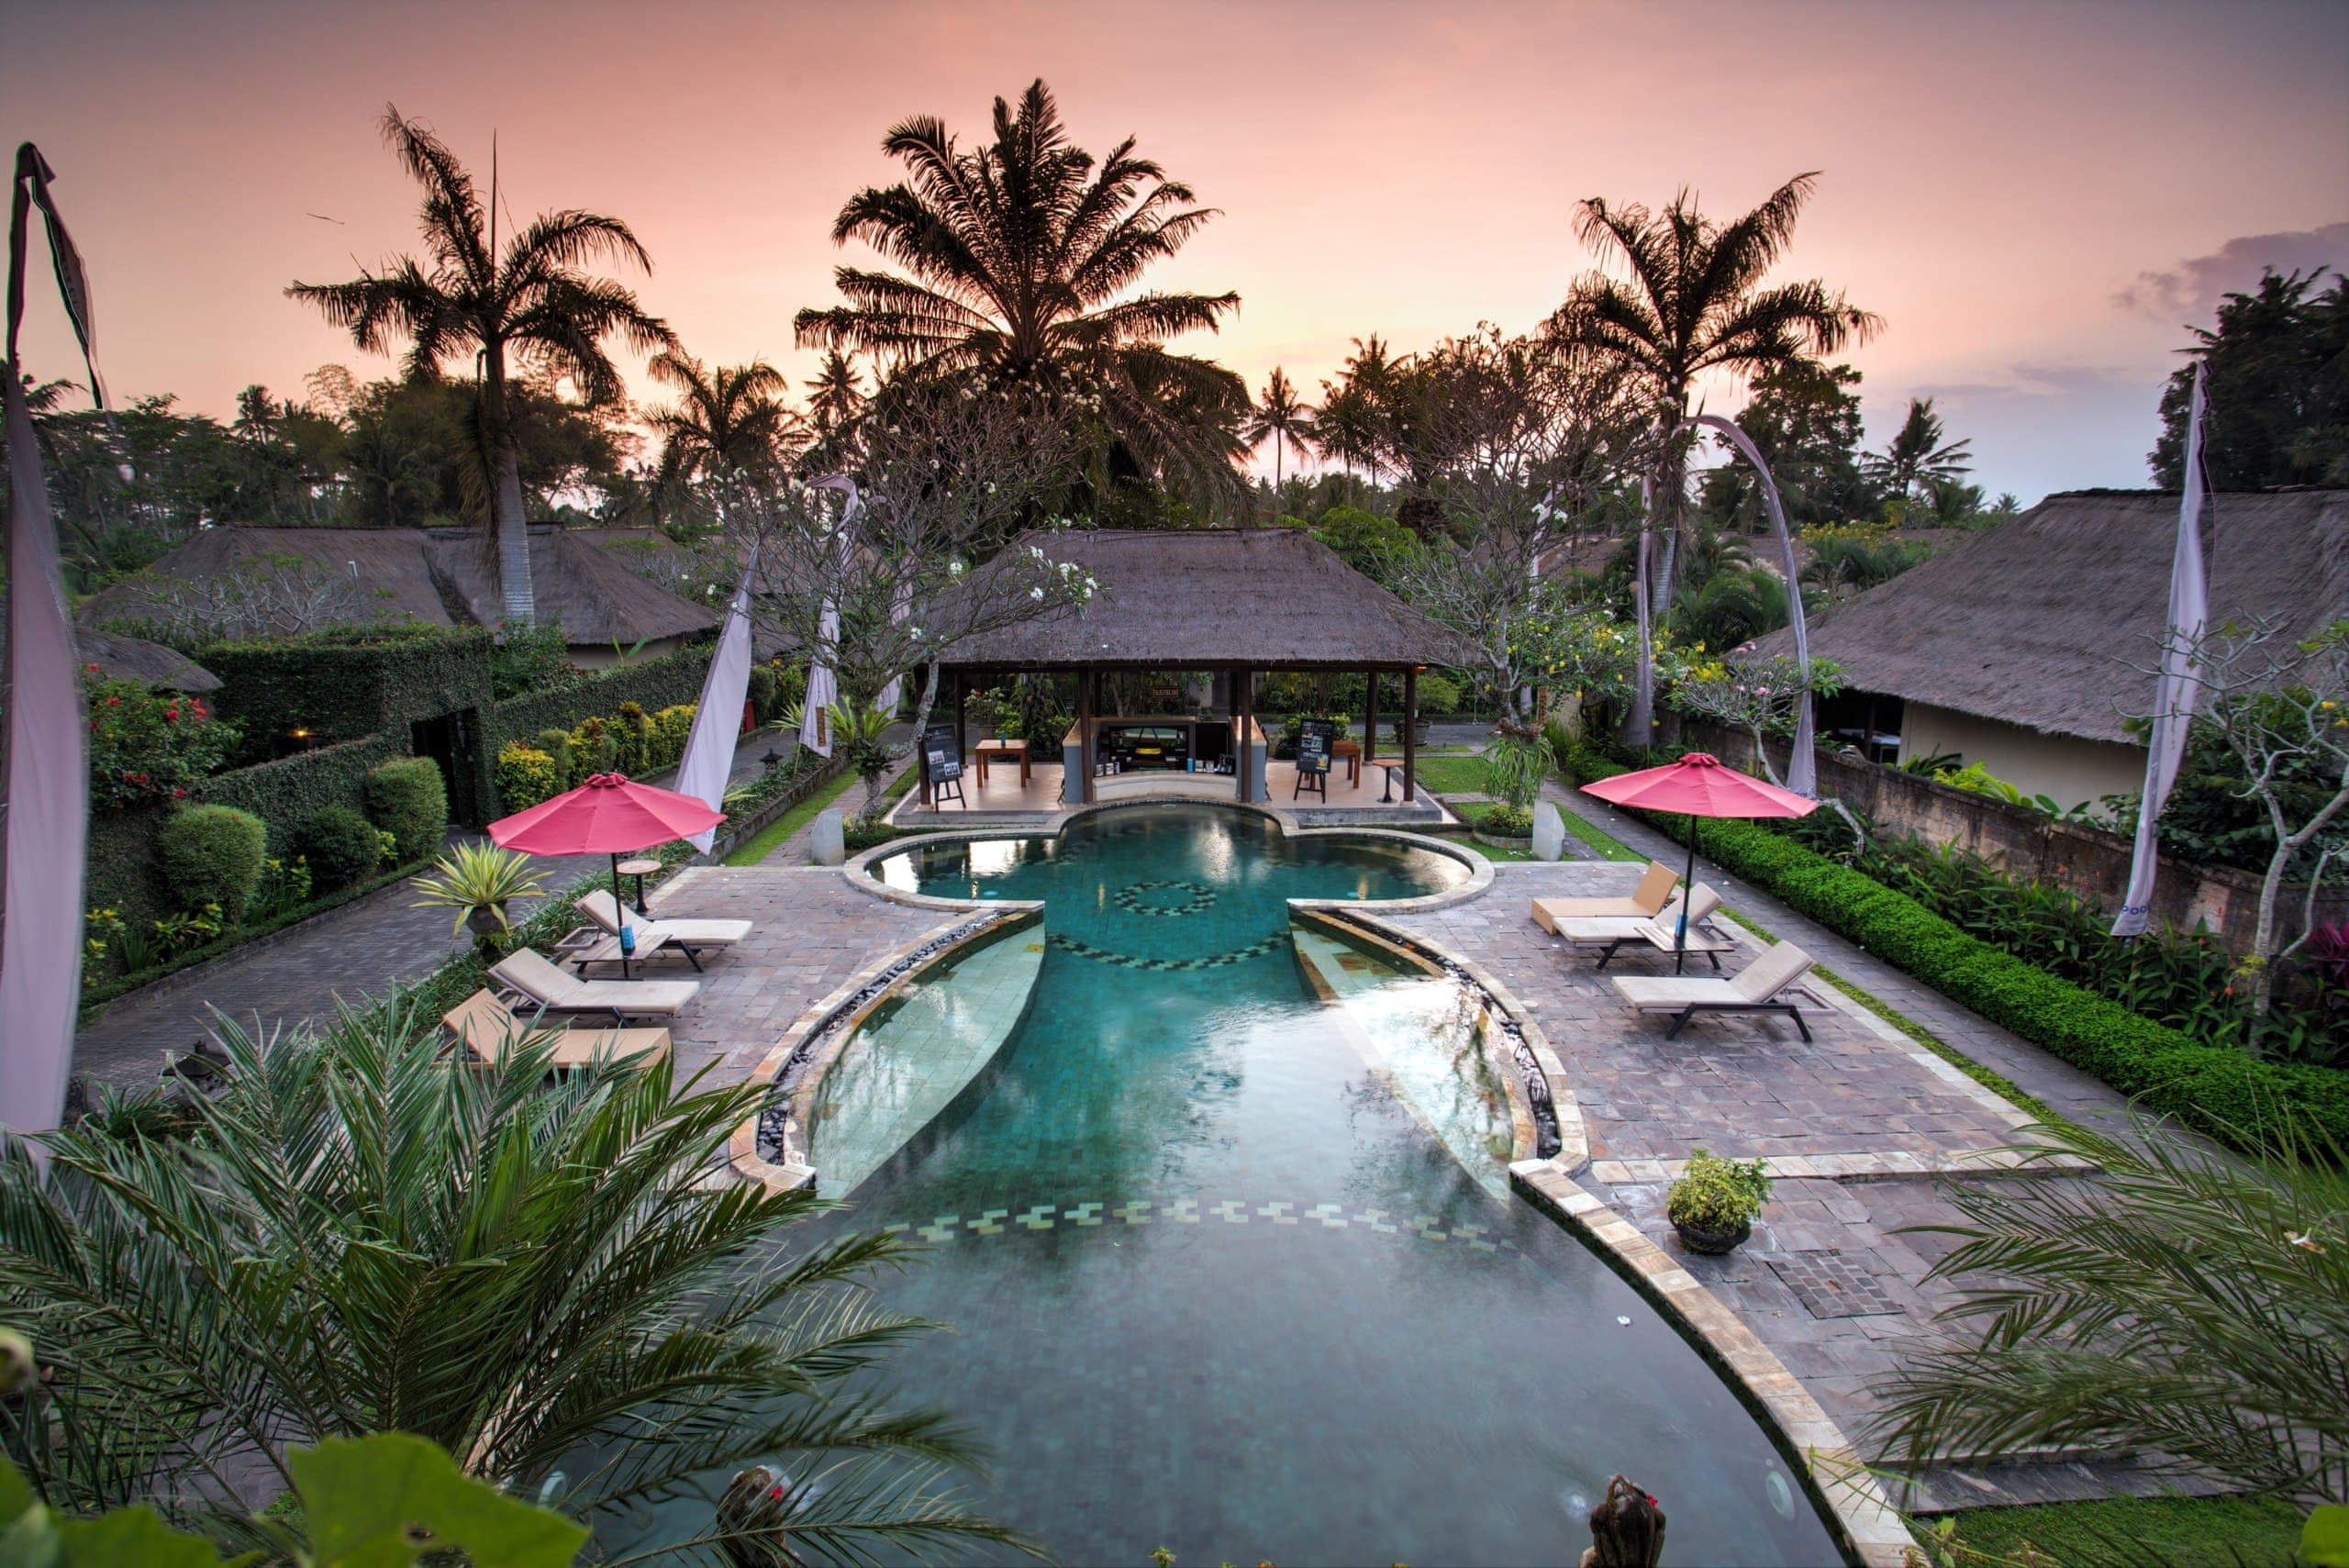 Отель furamaxclusive resort ubud (ex.furama villas & spa) 4**** (убуд / индонезия) - отзывы туристов о гостинице описание номеров с фото